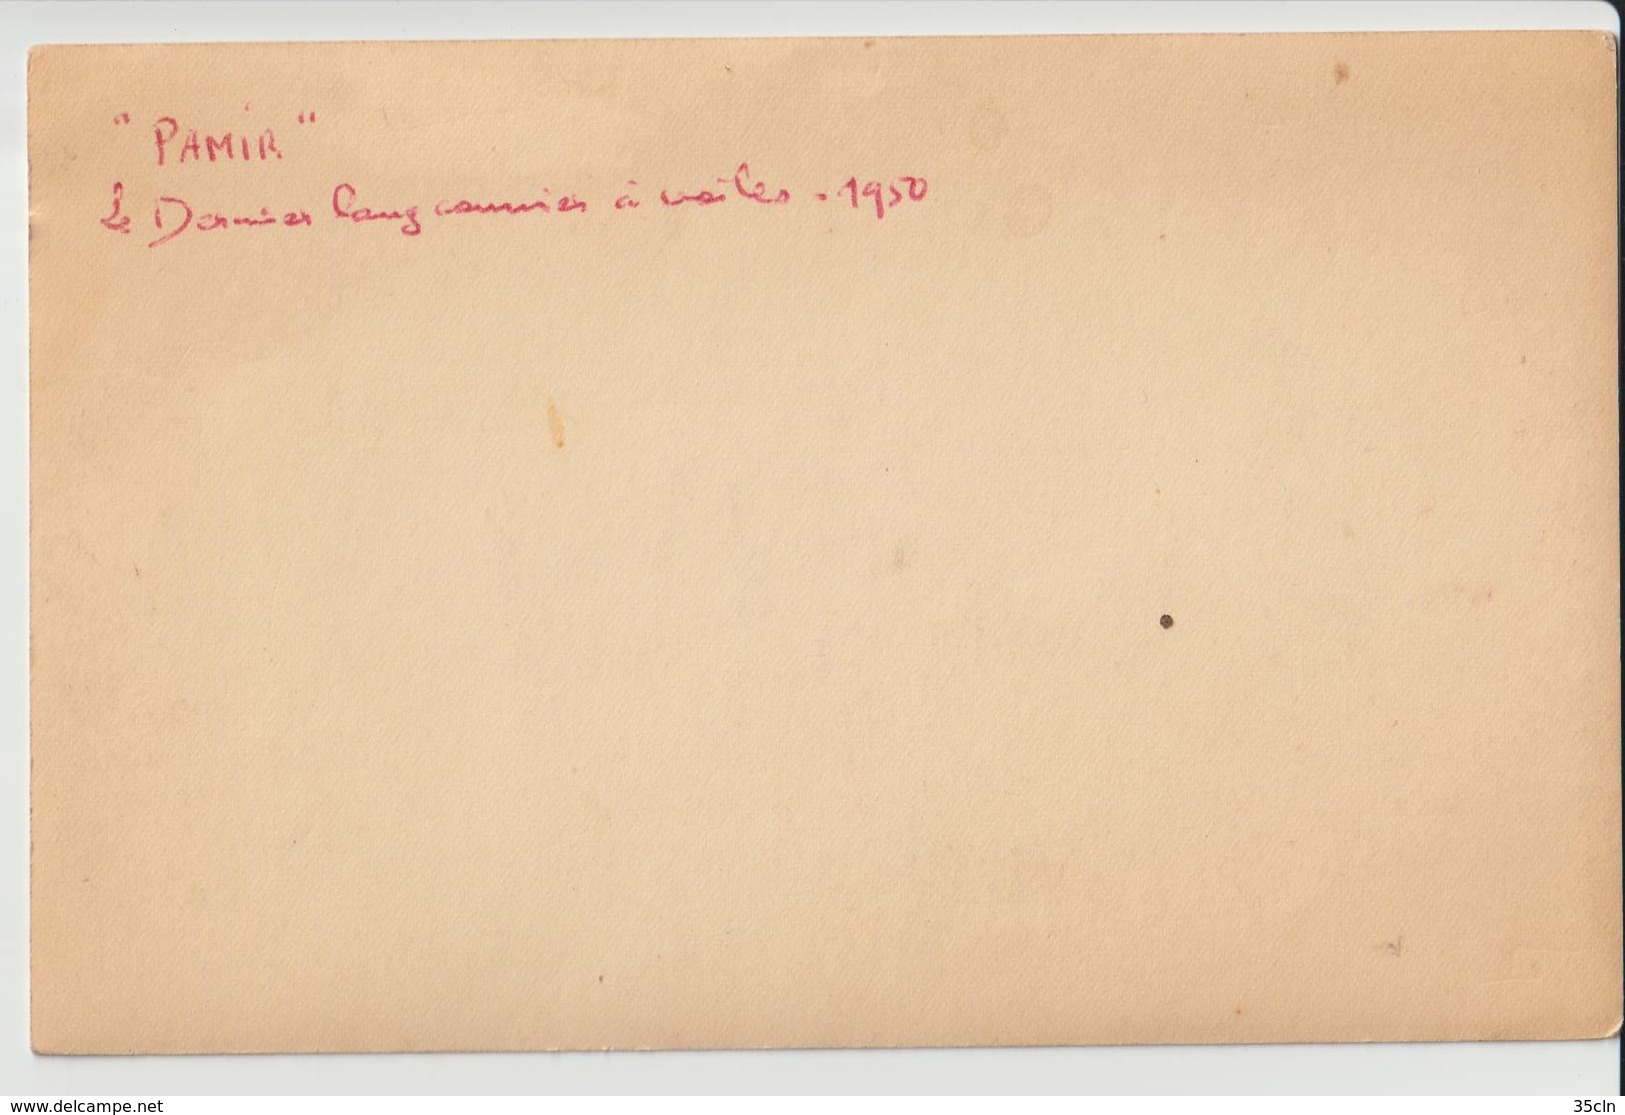 PAMIR - Carte Photo D'un Des Derniers Longs Courriers à Voile ( Datée 1950 Au Verso ). - Voiliers